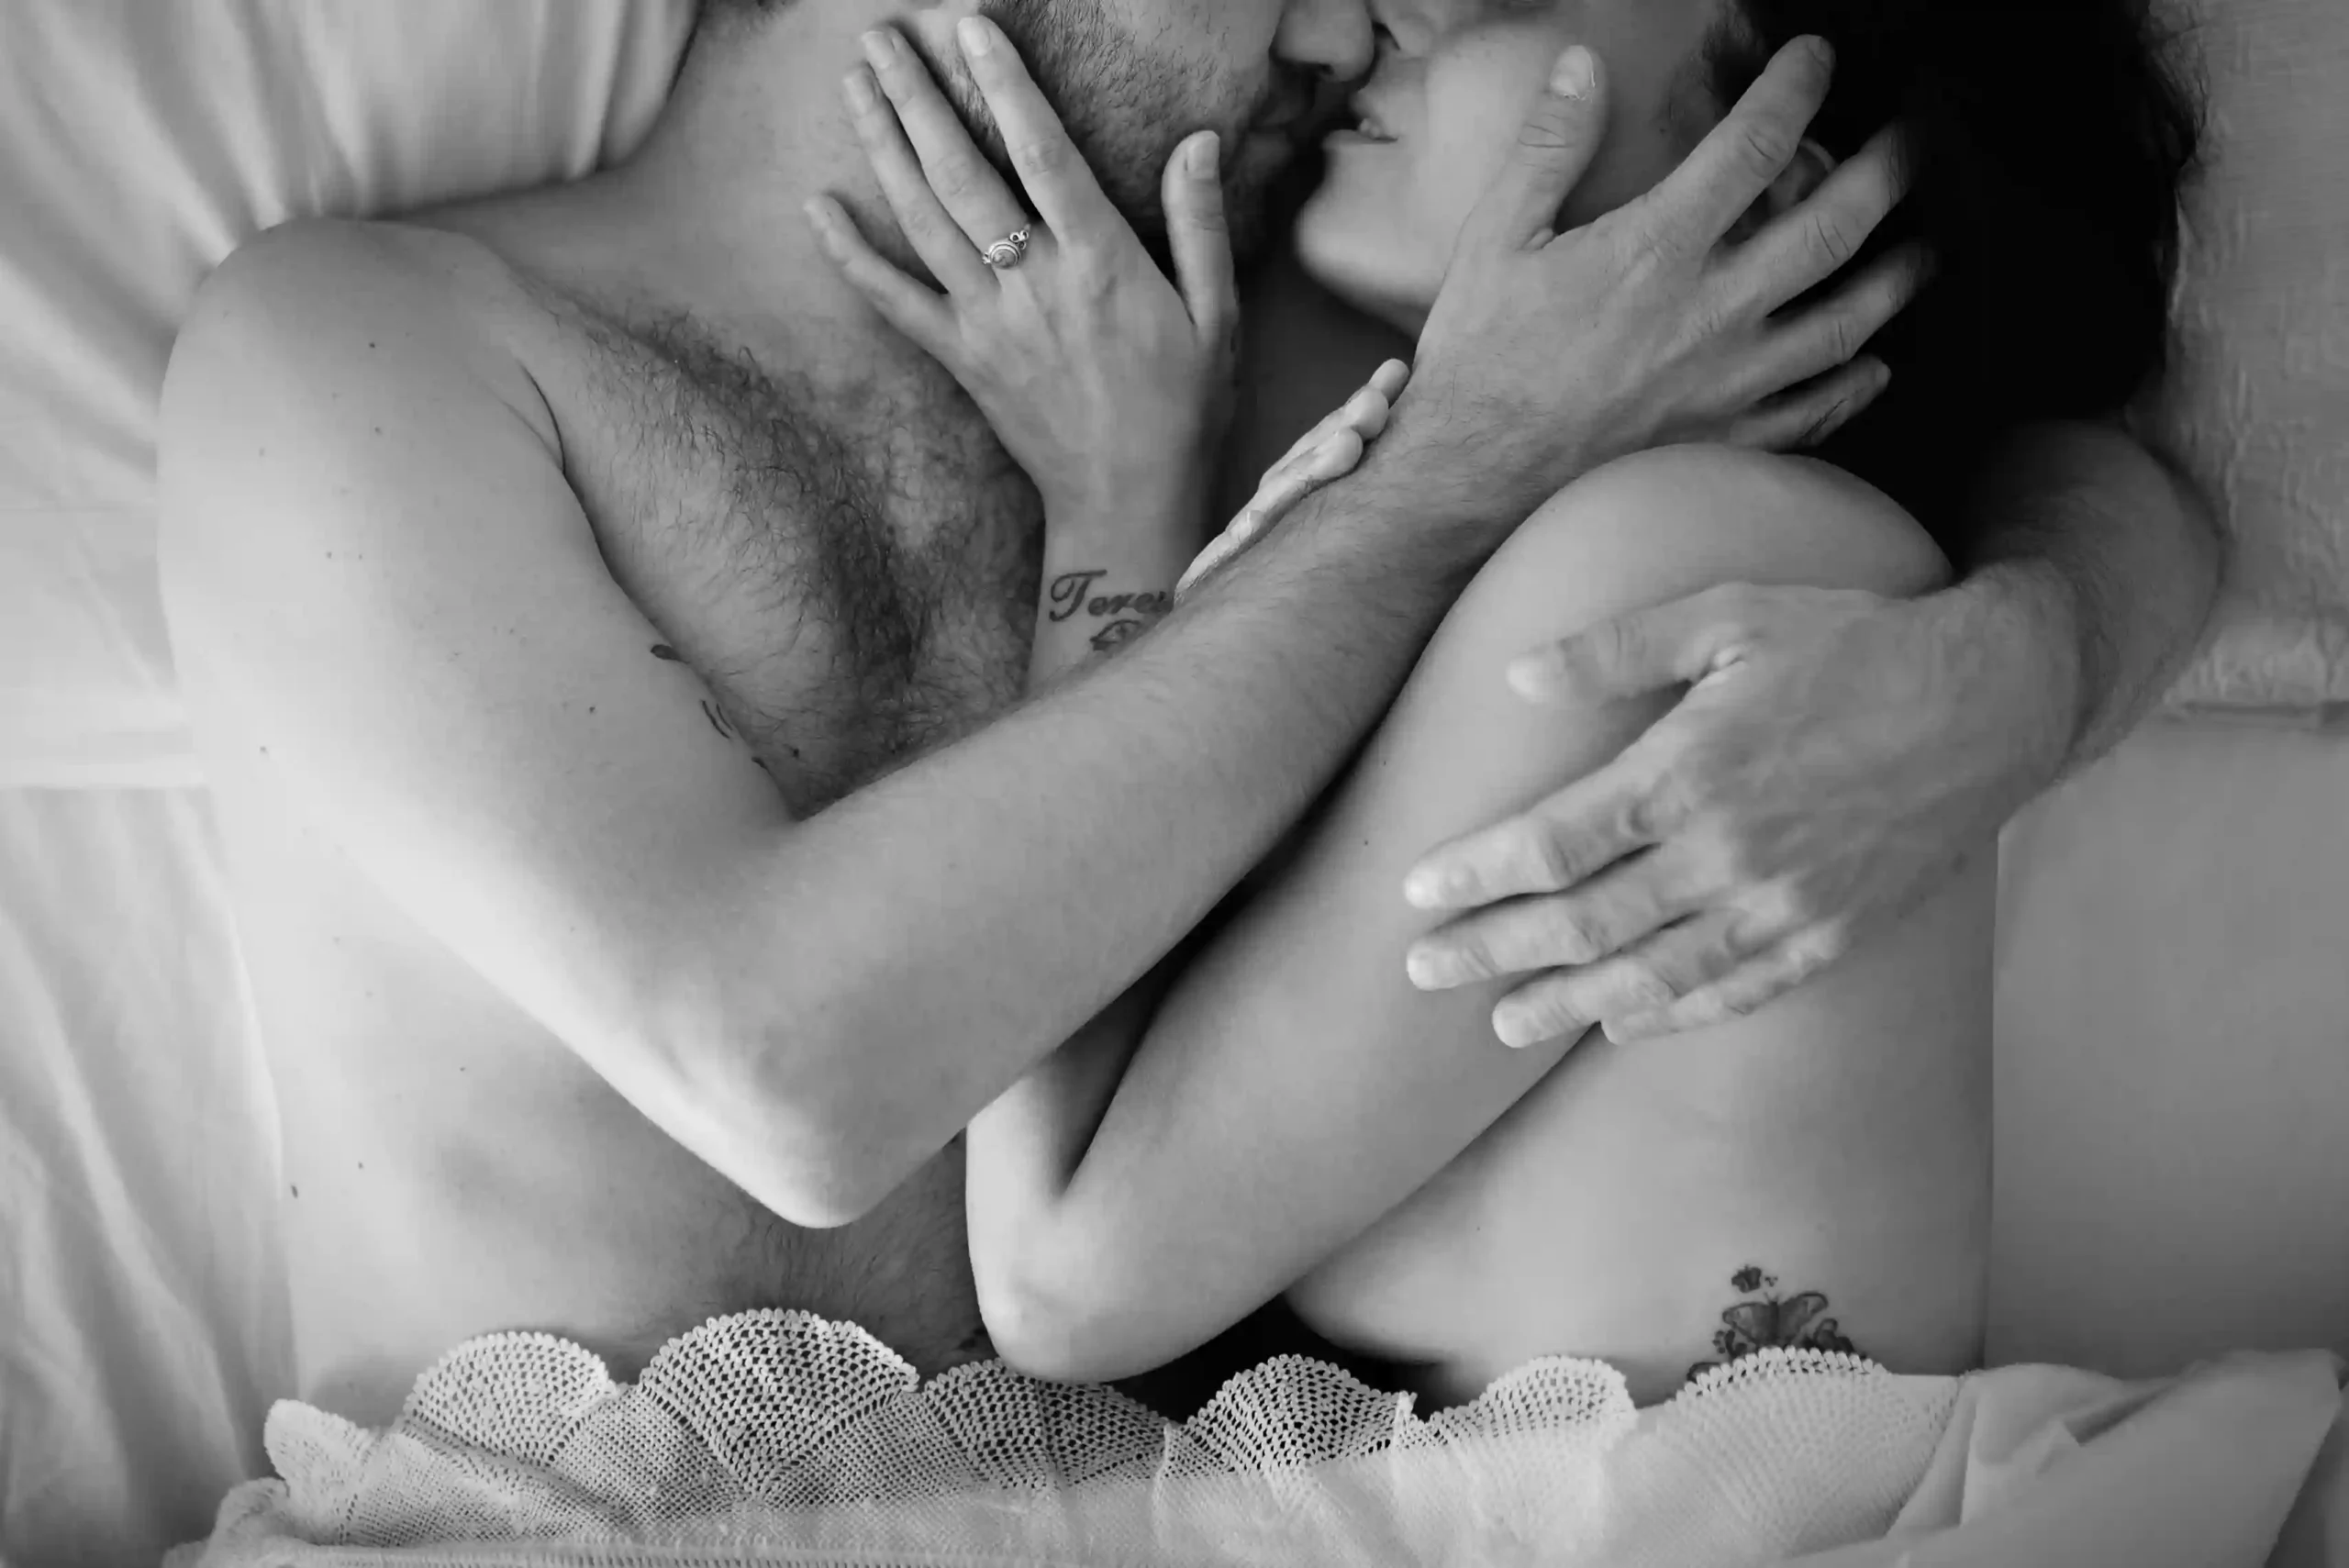 Coppia abbraccciata in un momento intimo a letto, posti entrambi lateralmente con le mani sul viso dell'altro, sotto una coperta con il pizzo. Fotografia di coppia boudoir bianco e nero Italia